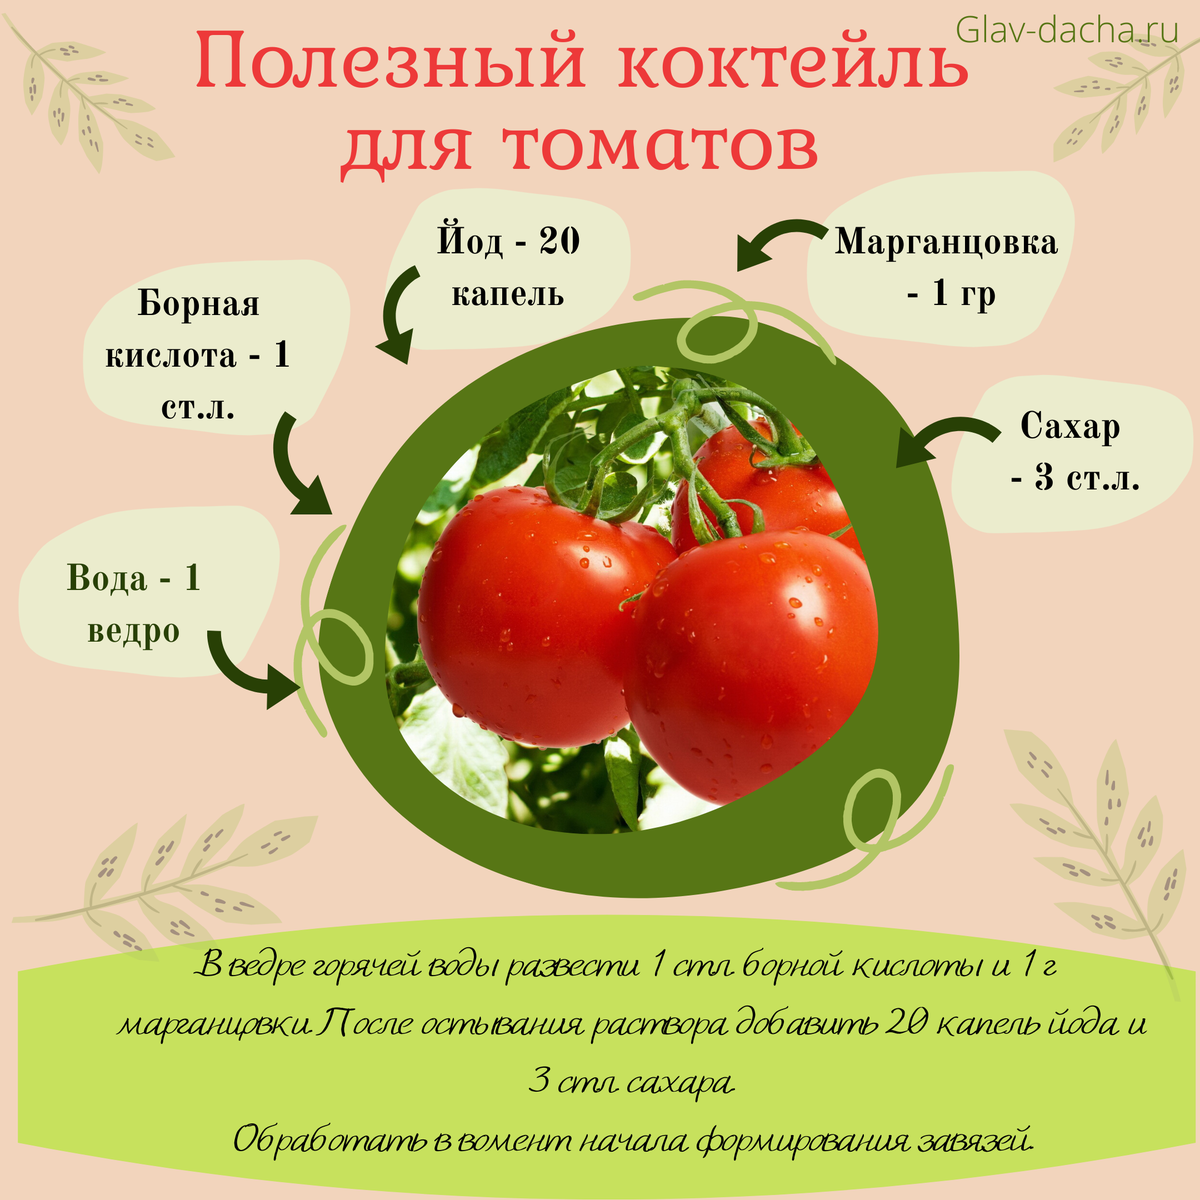 Борная кислота для томатов во время цветения: как опрыскать помидоры и провести обработку под корень, все о преимуществах и недостатках подкормки